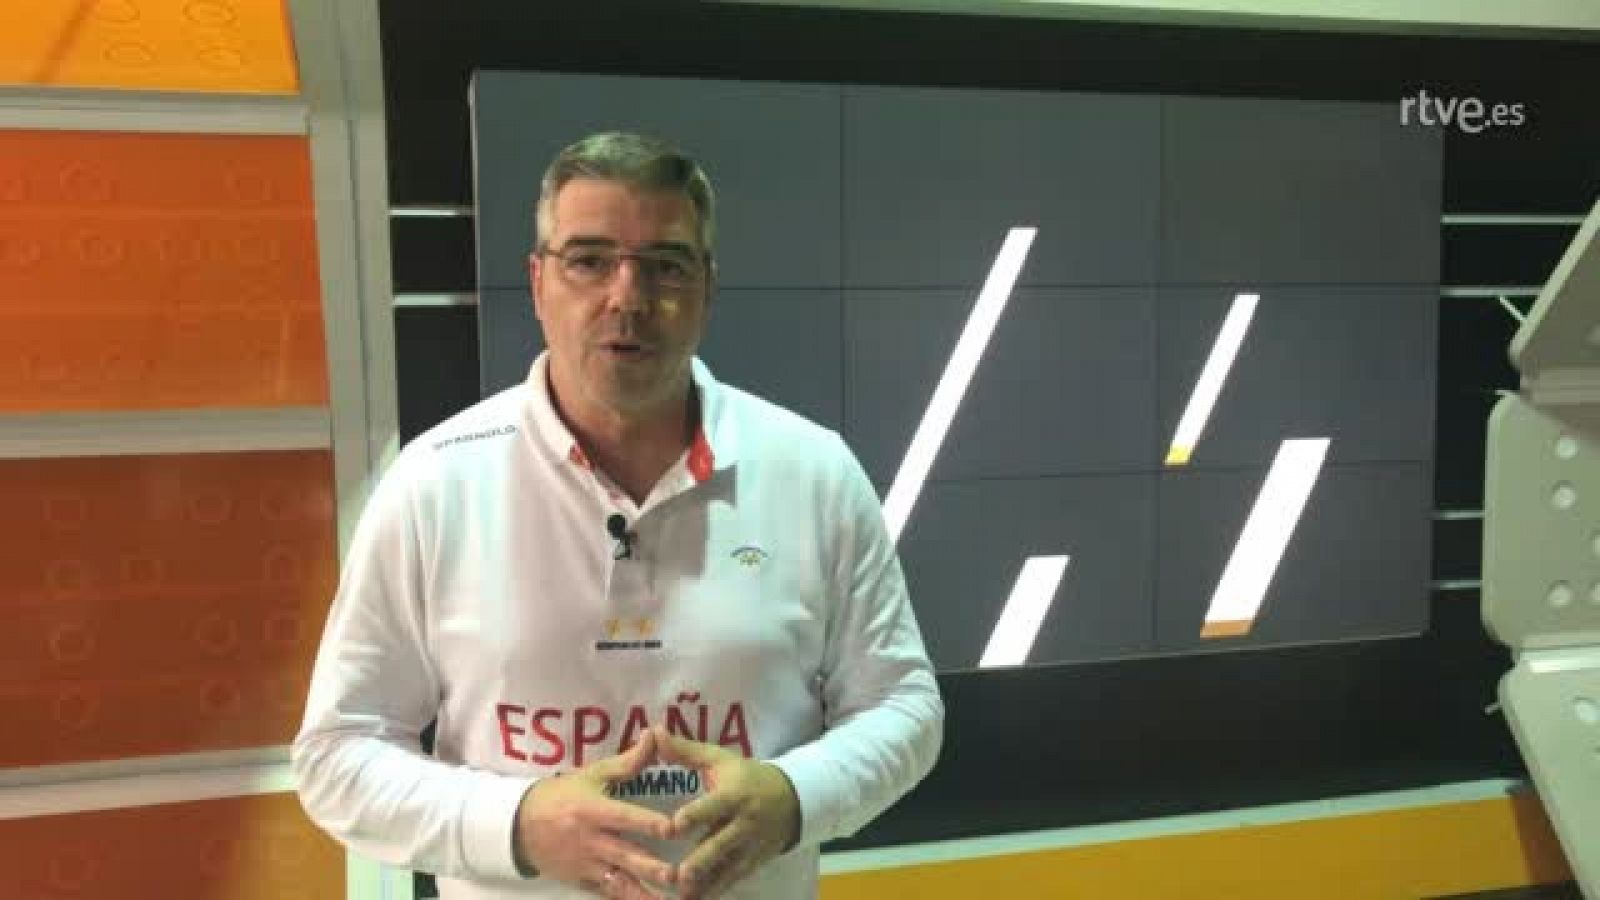 El exjugador de balonmano y comentarista de Teledeporte, Alberto Urdiales, advierte del peligro del juego macedonio practicado por el c ombinado que entrena el español Raúl González.